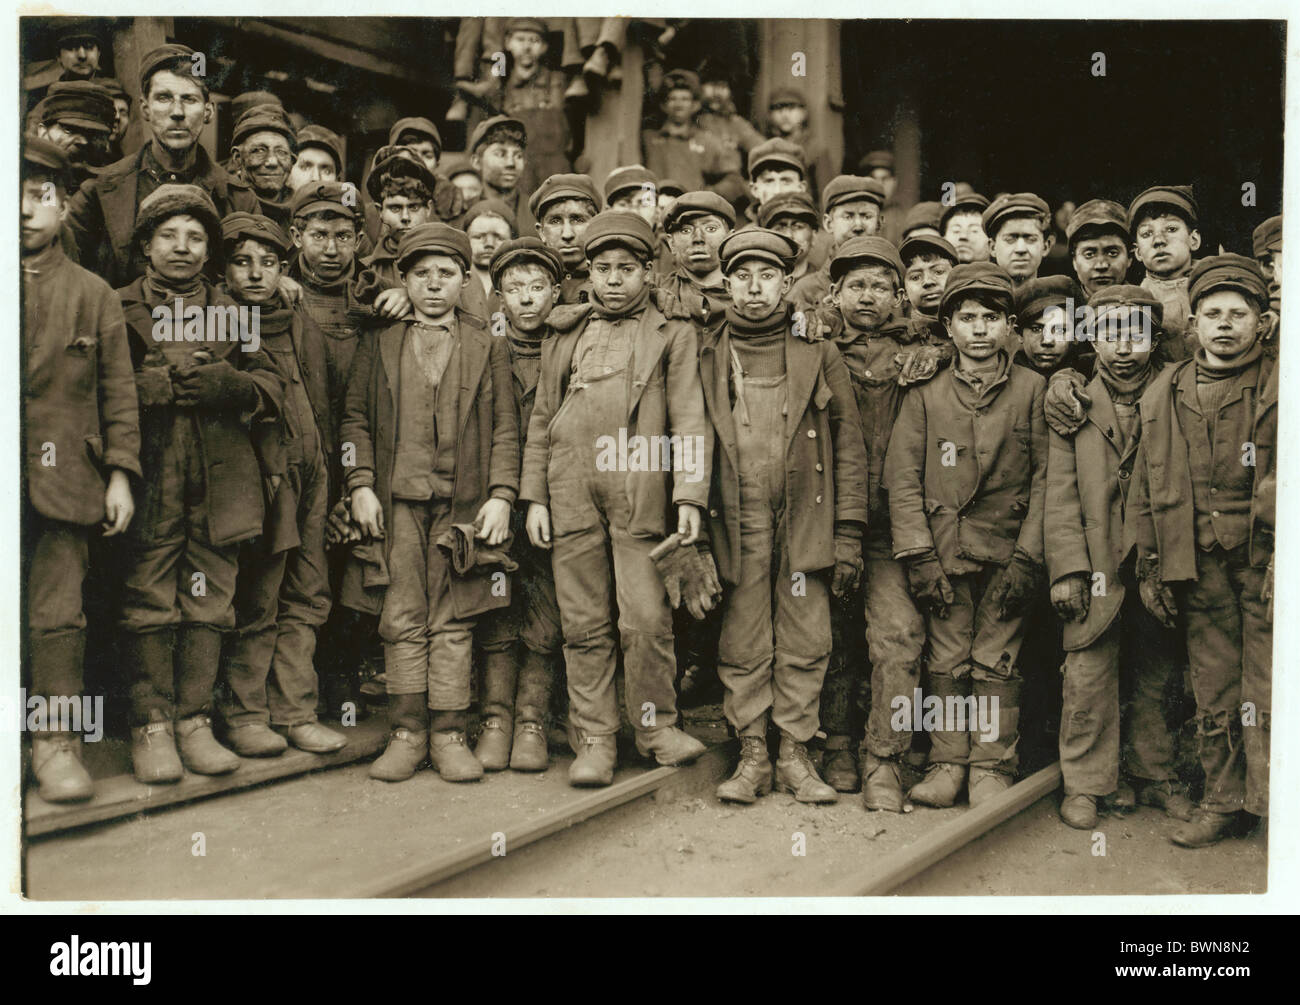 Les garçons disjoncteur disjoncteur Ewen portrait de l'industrie des mines de charbon Coal Co. groupe USA Amérique États-Unis Amérique du Nord Banque D'Images